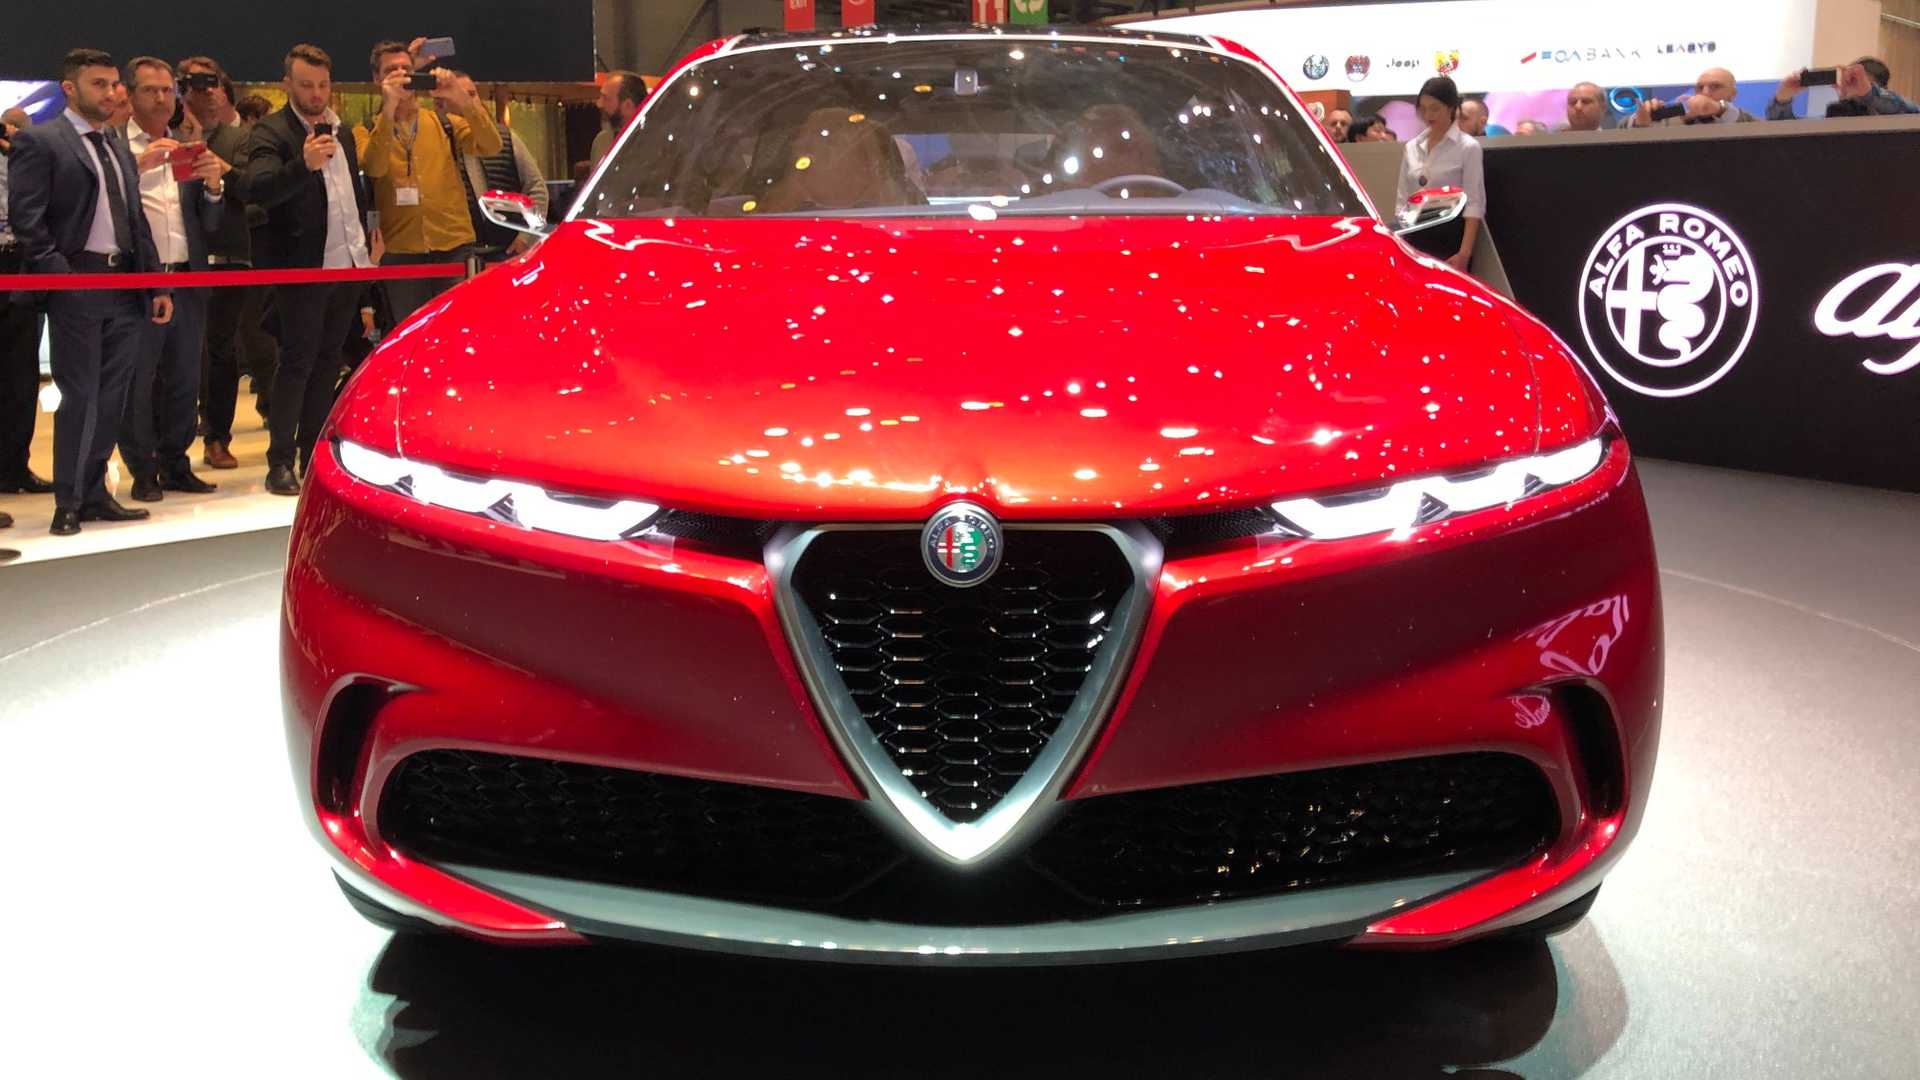 Anteprima italiana del nuovo SUV Alfa Romeo Tonale al “Salone del